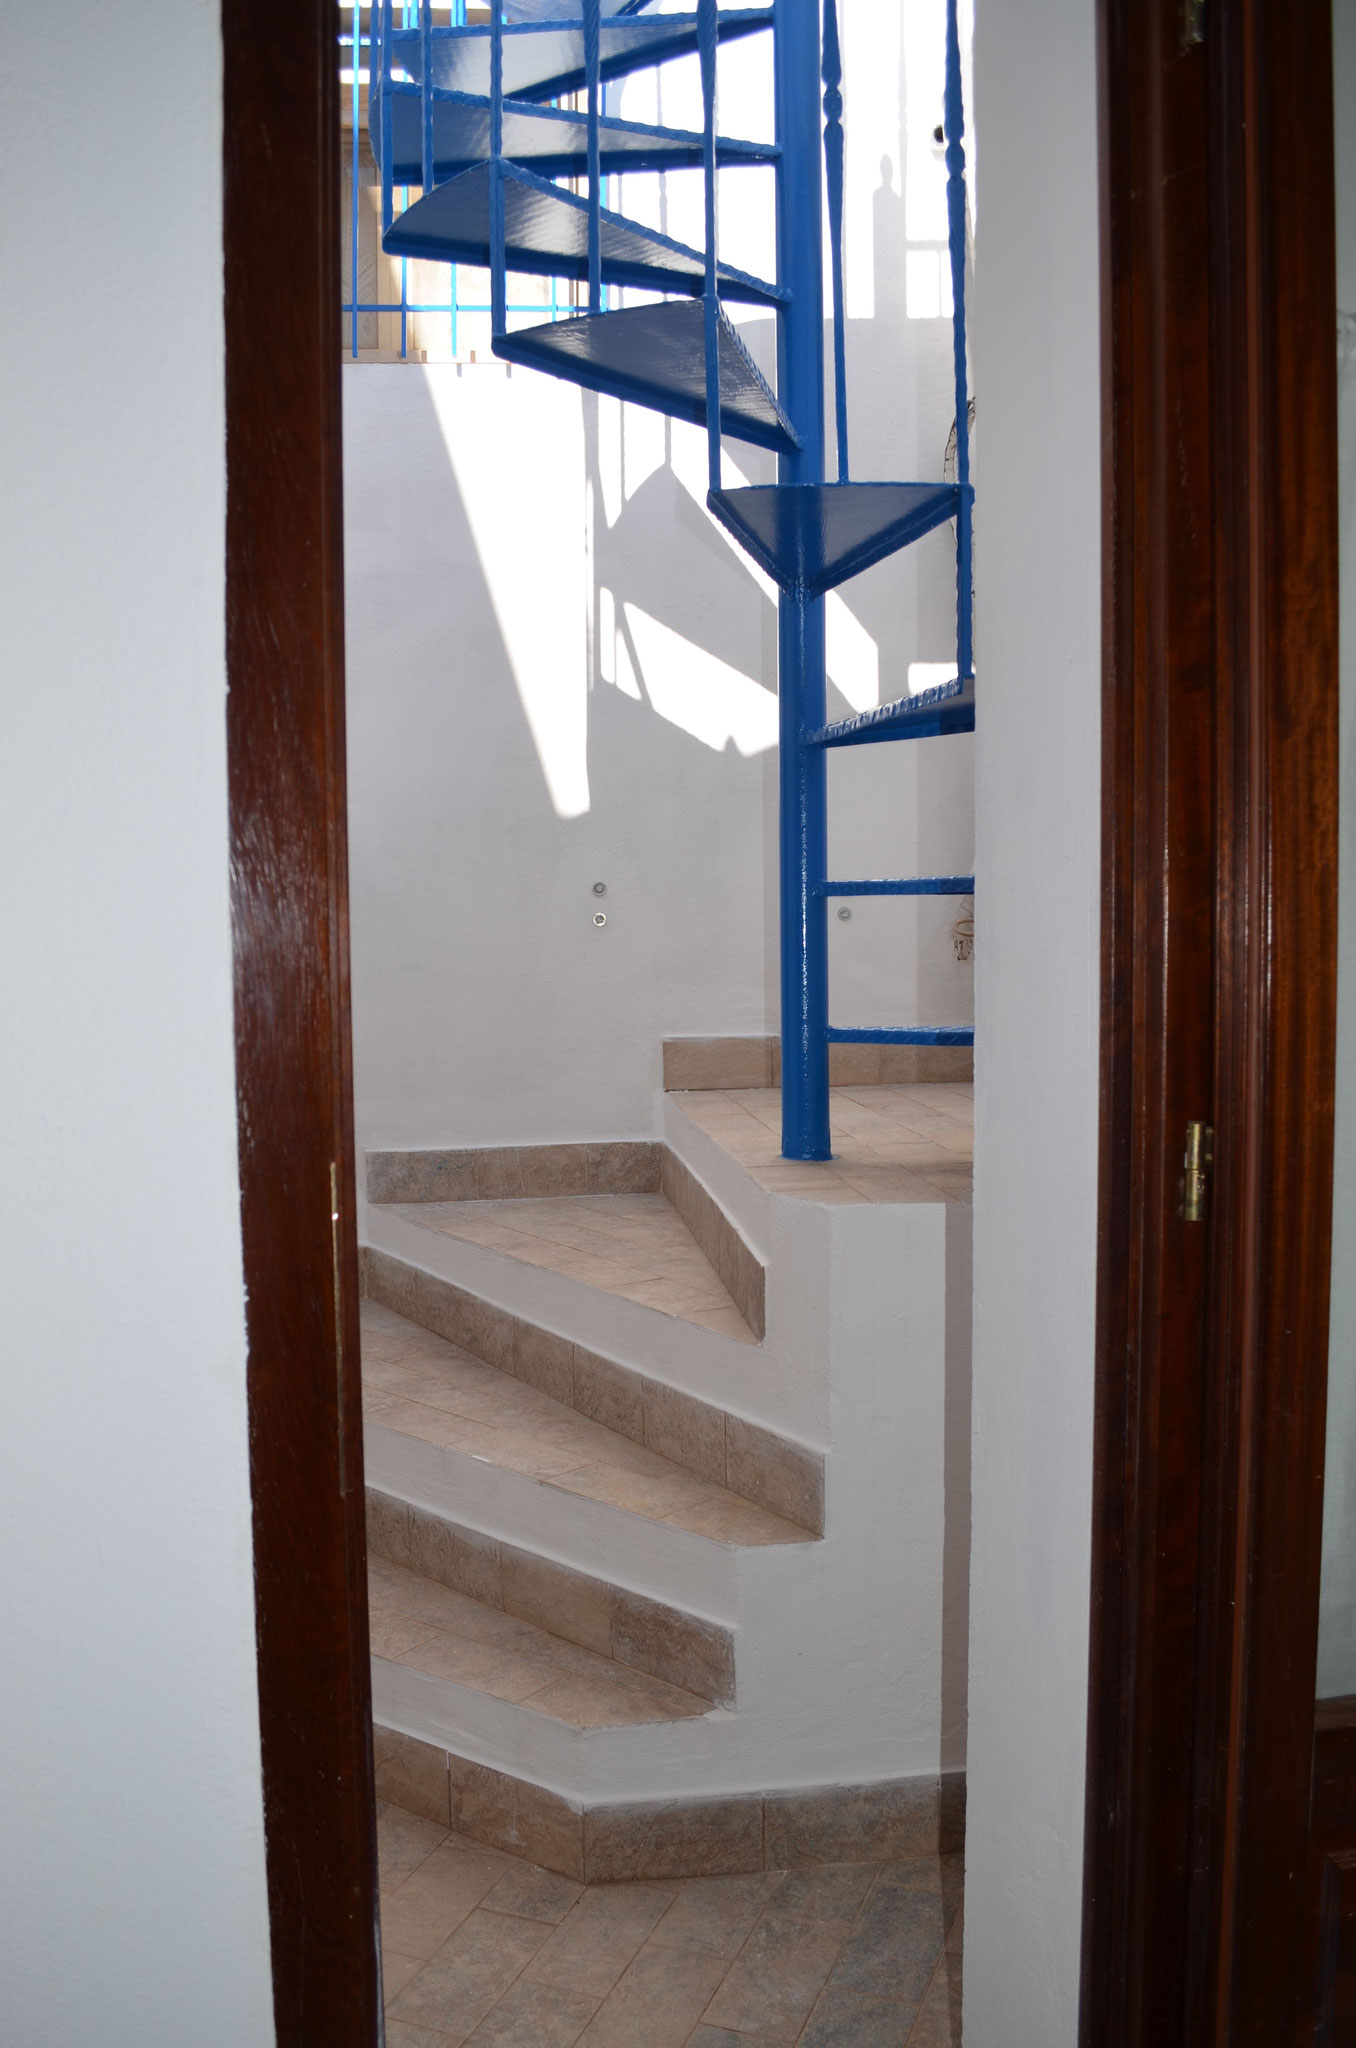 Escalier en colimaçon pour atteindre le deuxième étage et rejoindre la chambre "Le Belvédère"